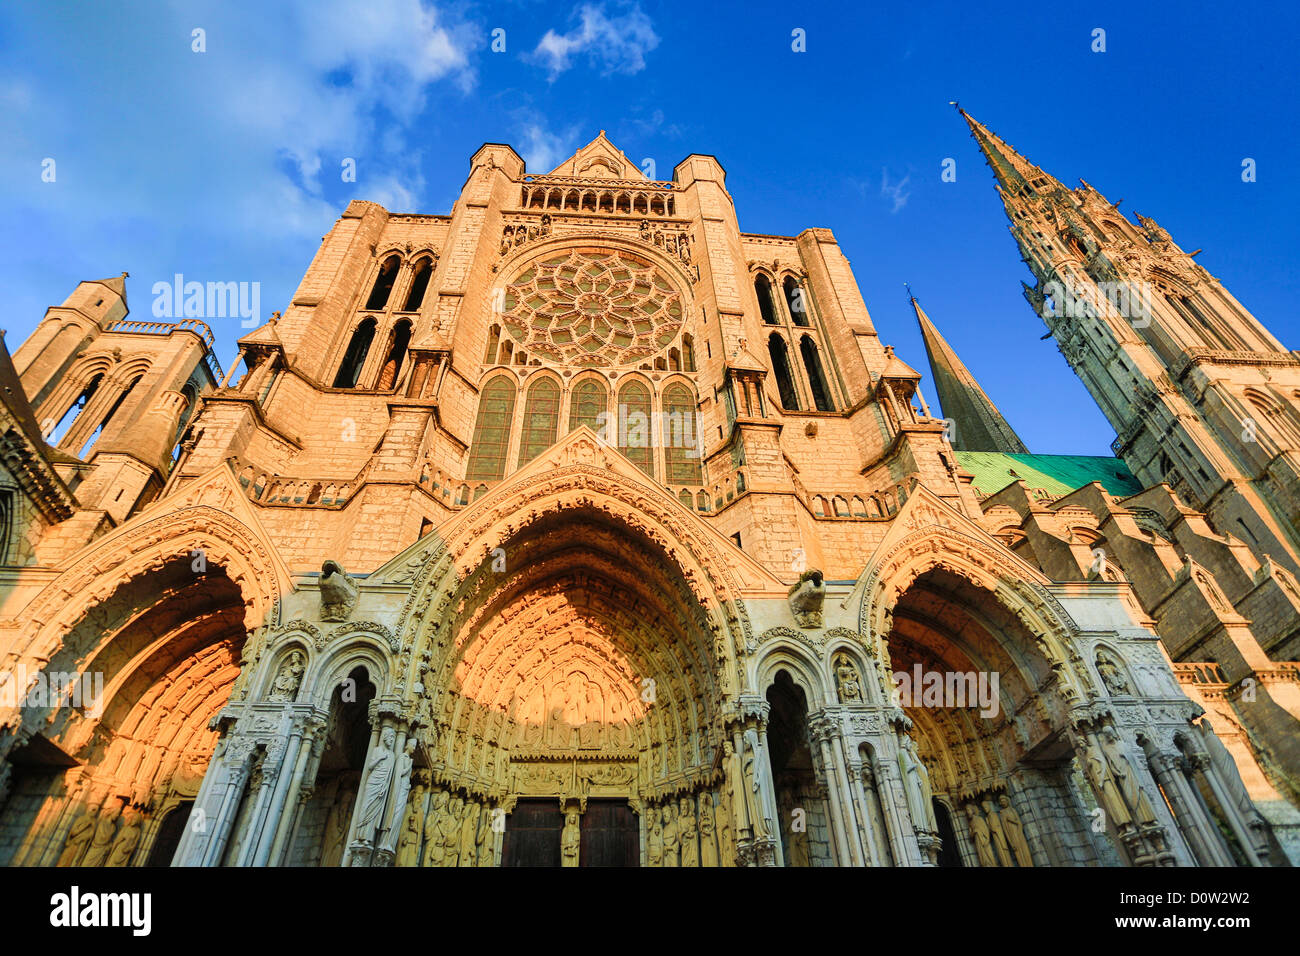 Francia, Europa, viaggi, Chartres, cattedrale, patrimonio mondiale, architettura, storia, main, medievale, turismo, Unesco, facciata, gat Foto Stock